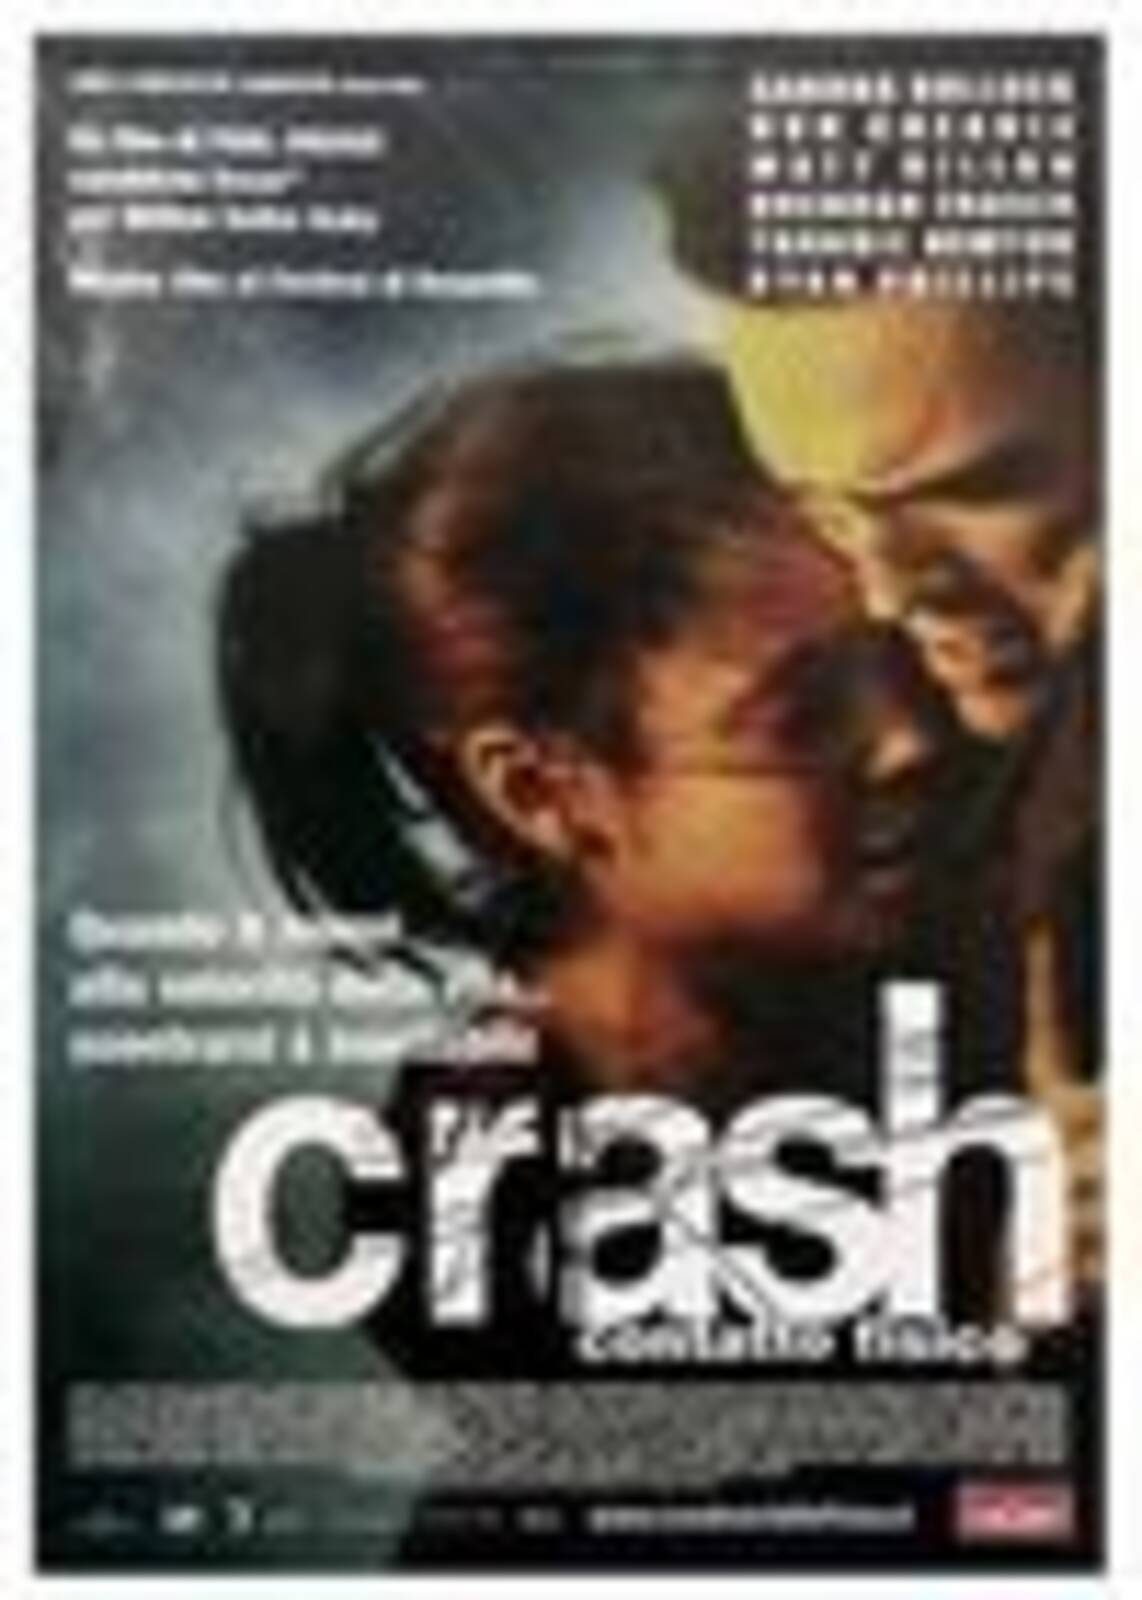 Crash - Publicity still of Terrence Howard & Tony Danza